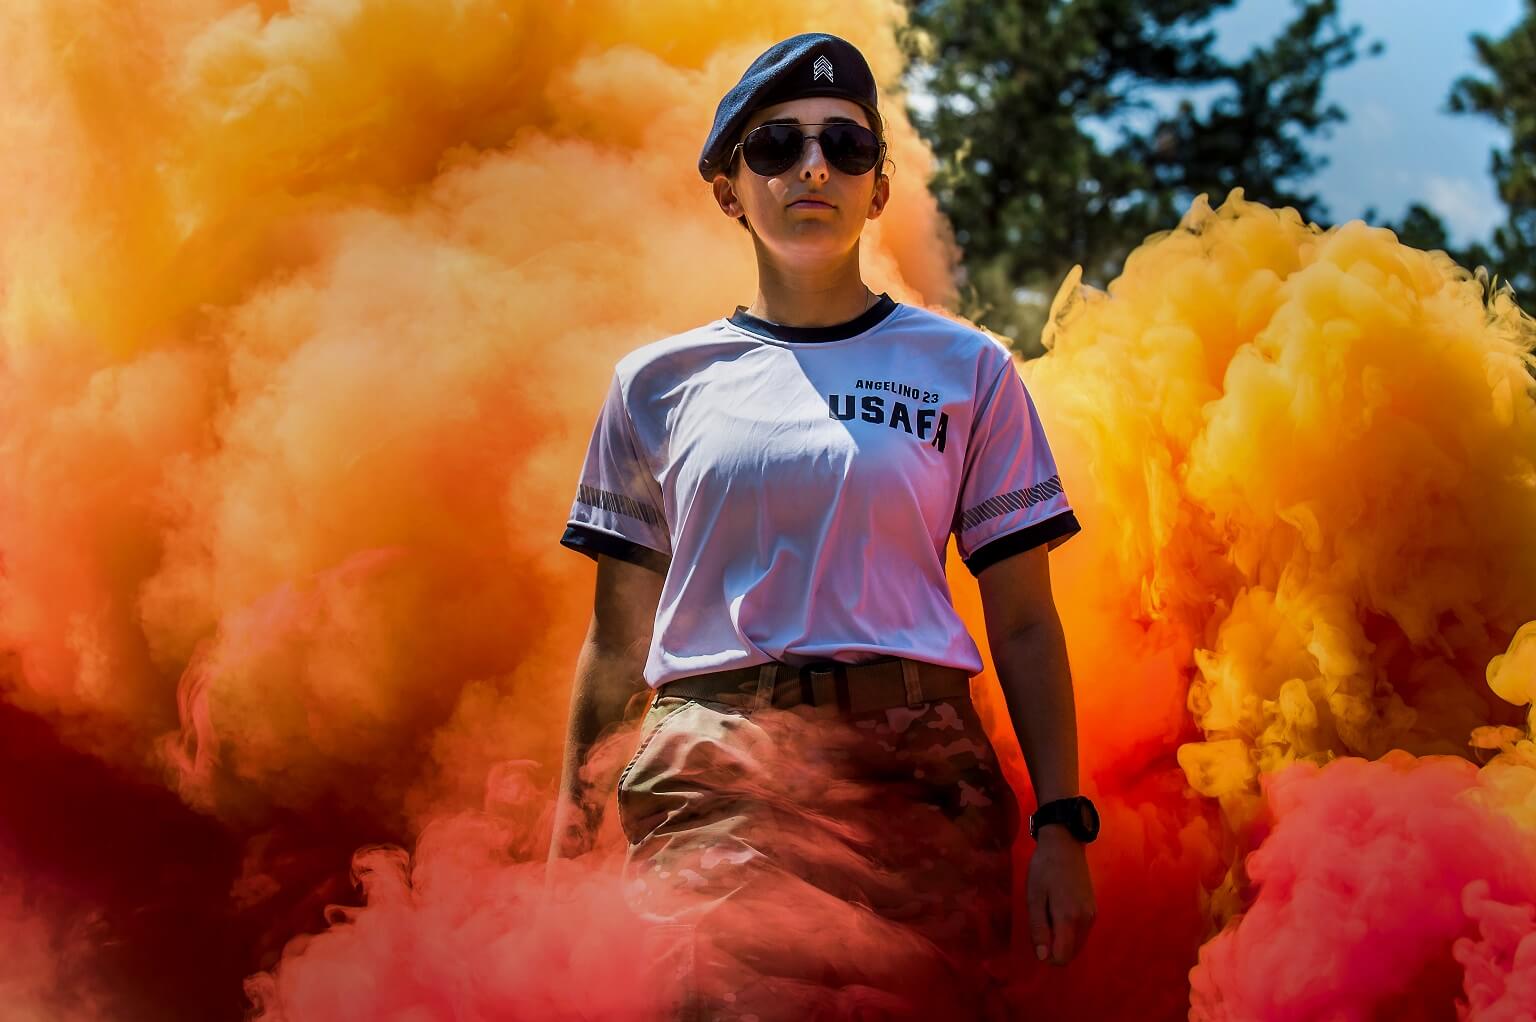 A cadet cadre walks through smoke